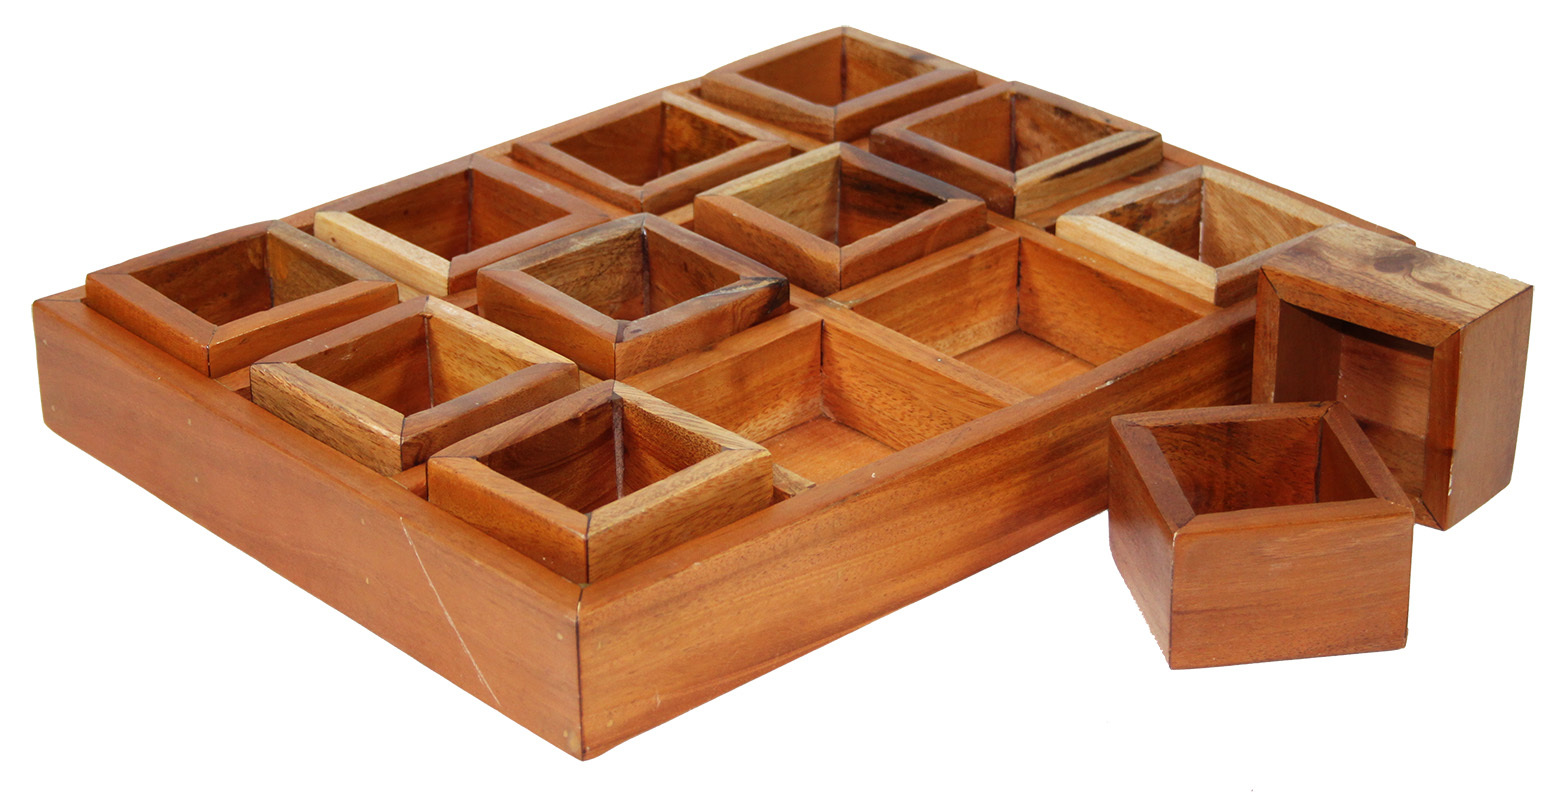 Mahogany Sorting Tray - 12 Compartments & Boxes